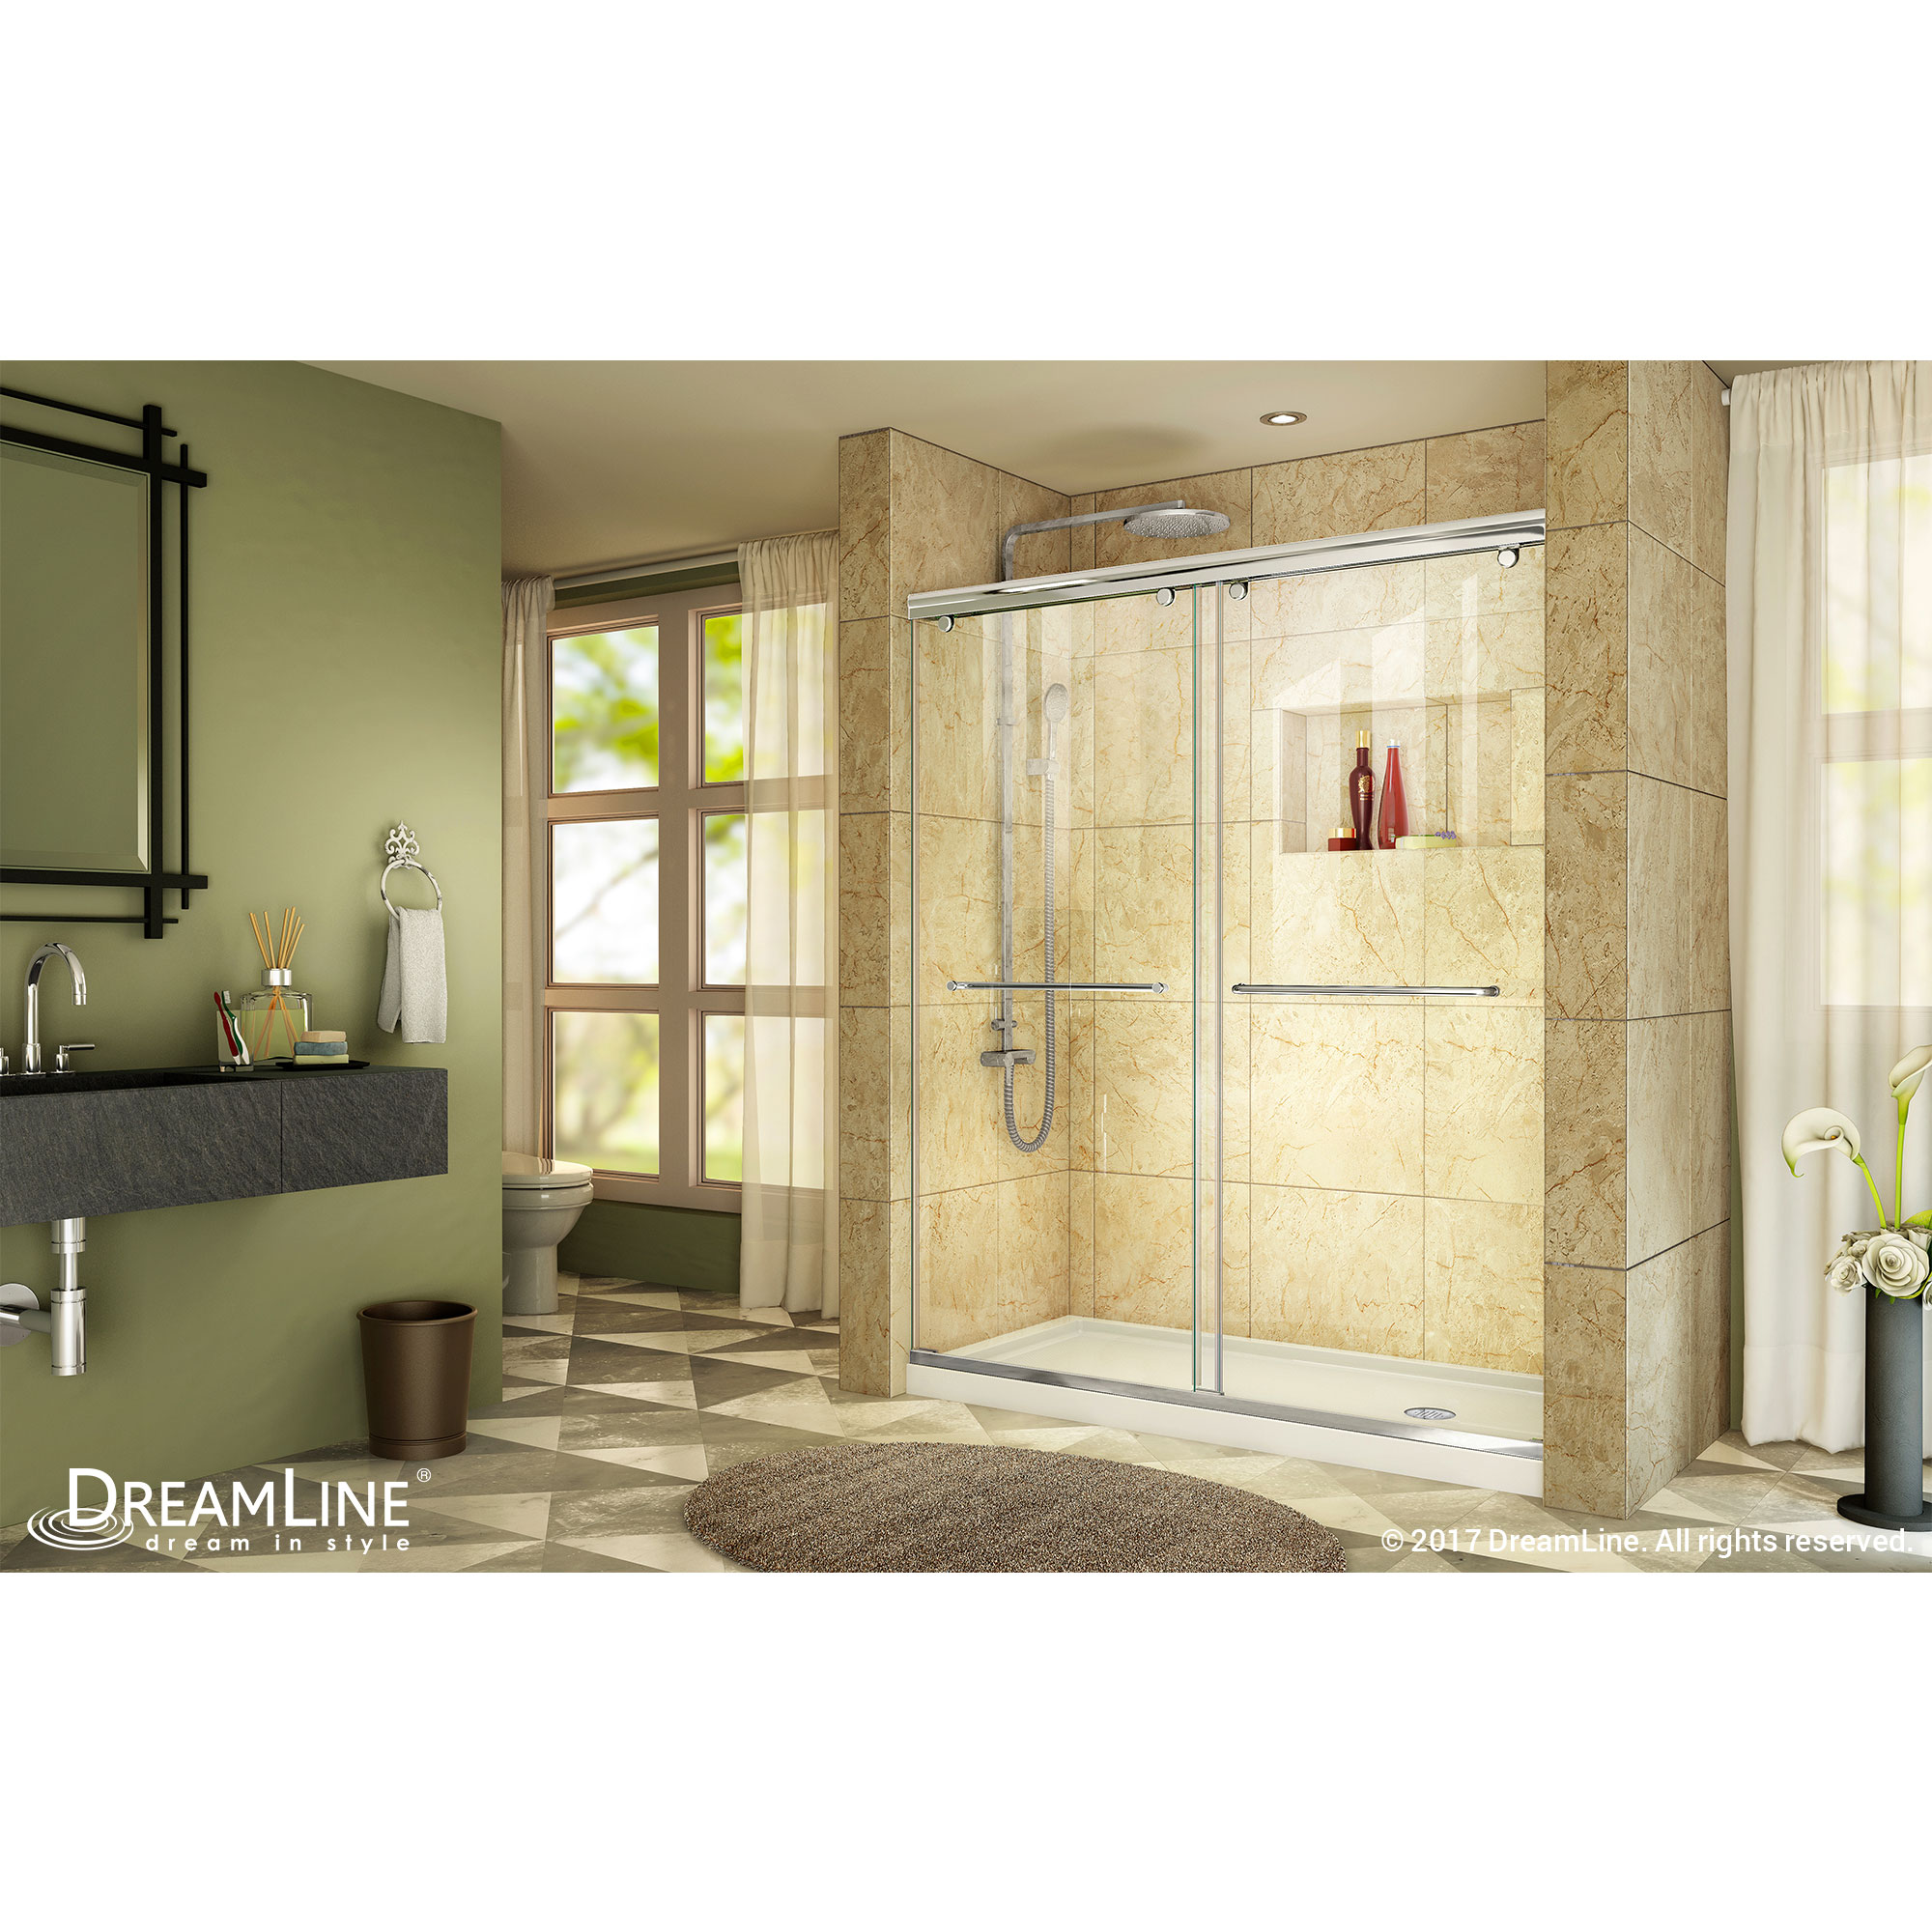 Charisma Frameless Bypass Sliding Shower Door & SlimLine 32" by 60" Shower Base